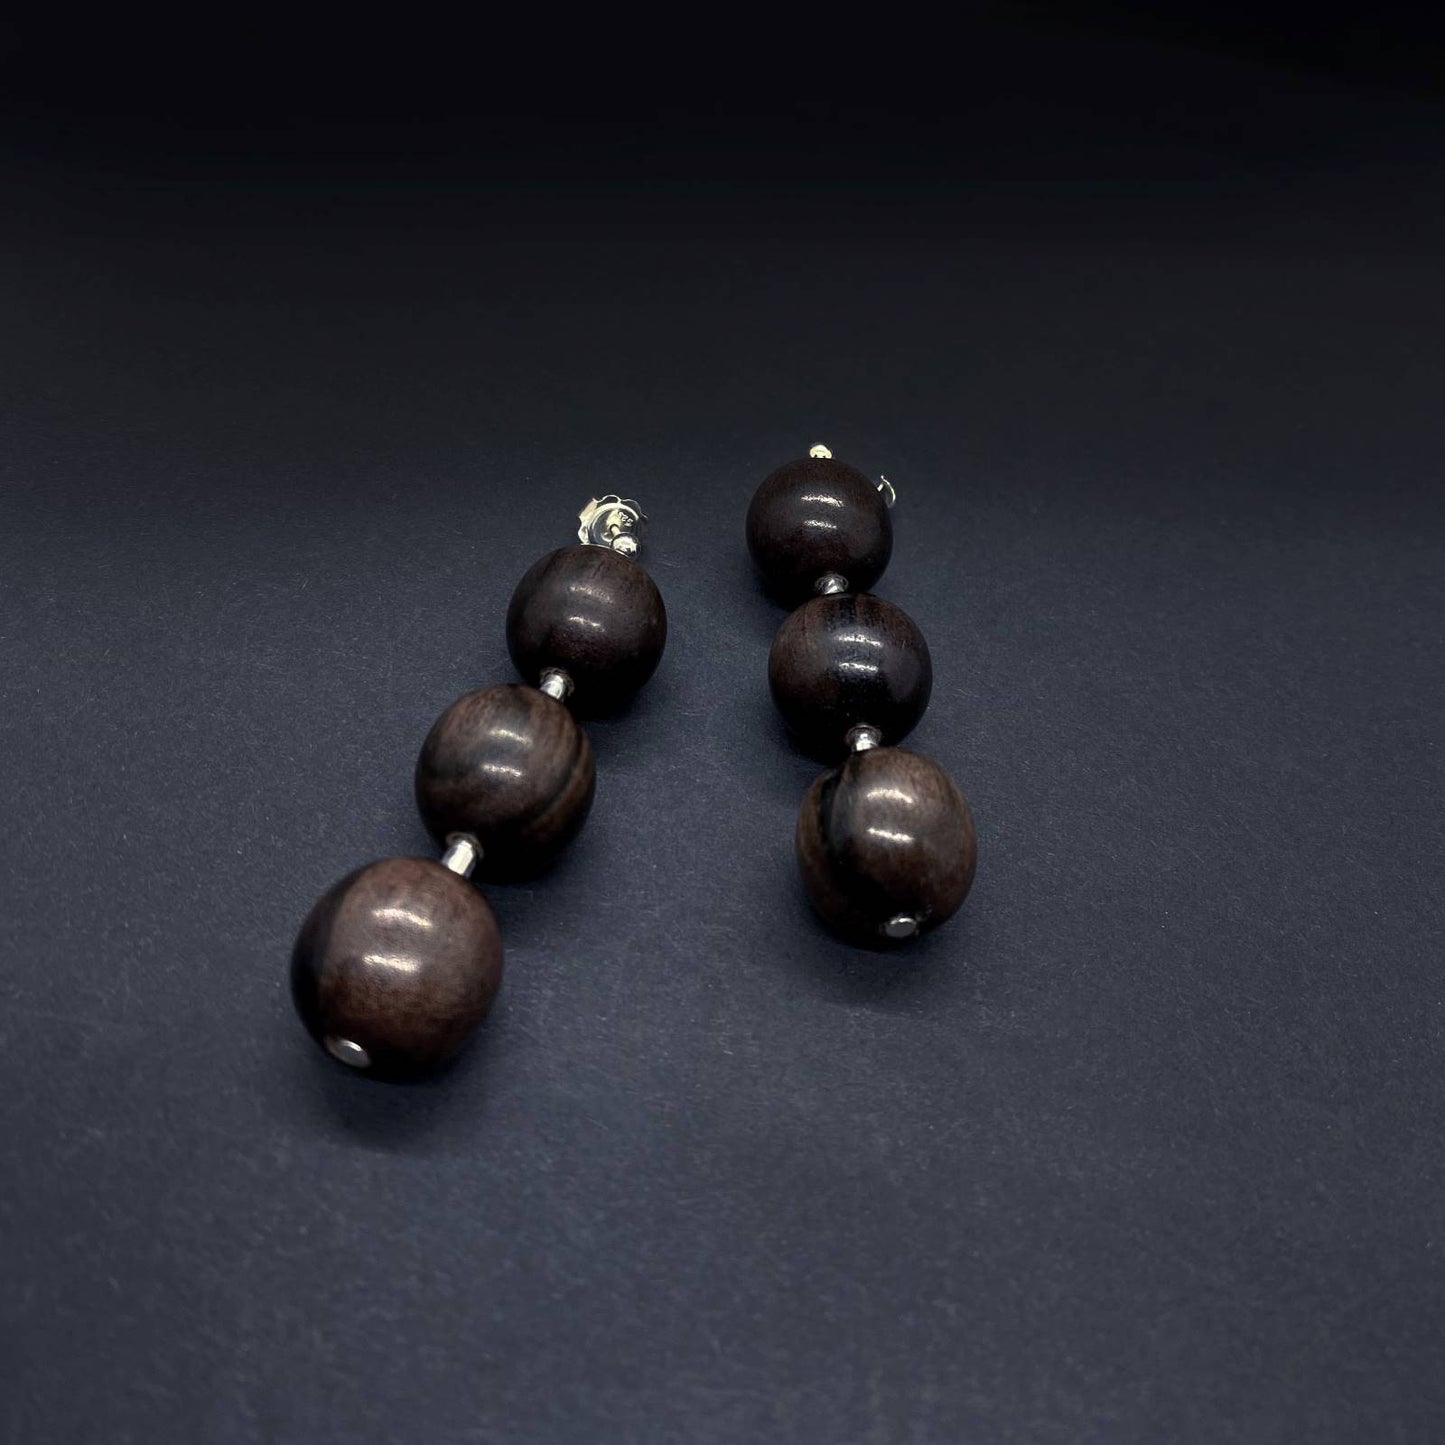 Lana Triple Bead & Silver Tube Earrings - Silverwood Jewellery